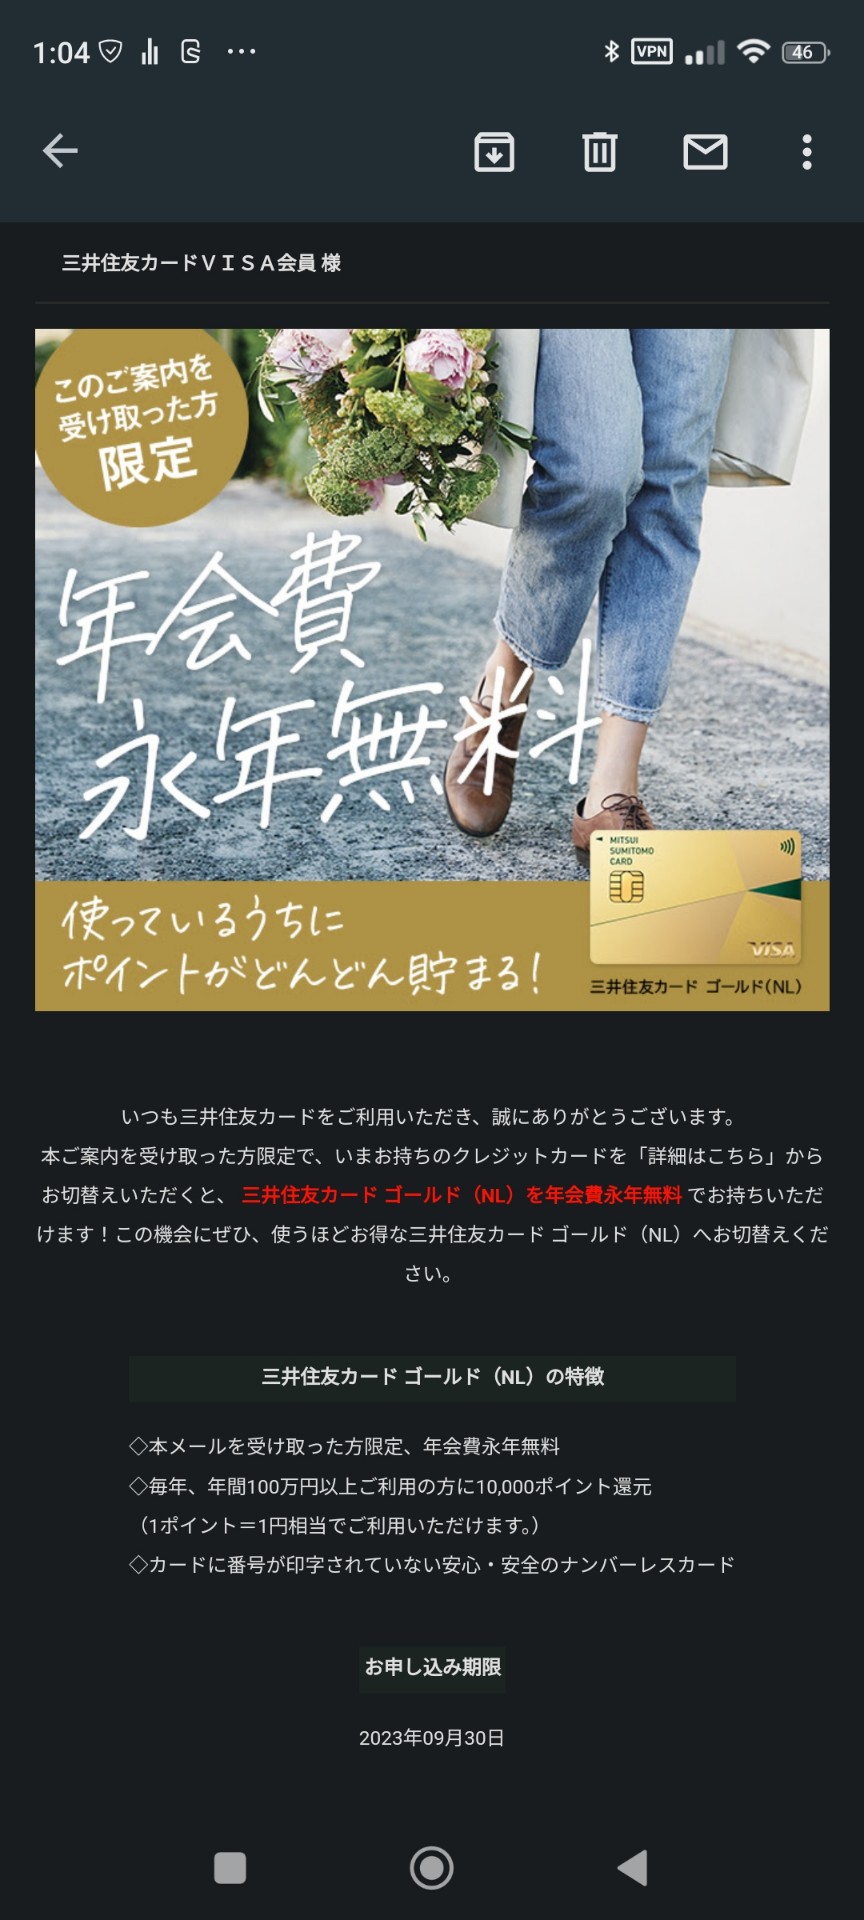 【朗報】三井住友カード、年100万円以上利用したらゴールドカードに年会費永年無料で切り替えできるサービスを開始  [114888544]\n_1